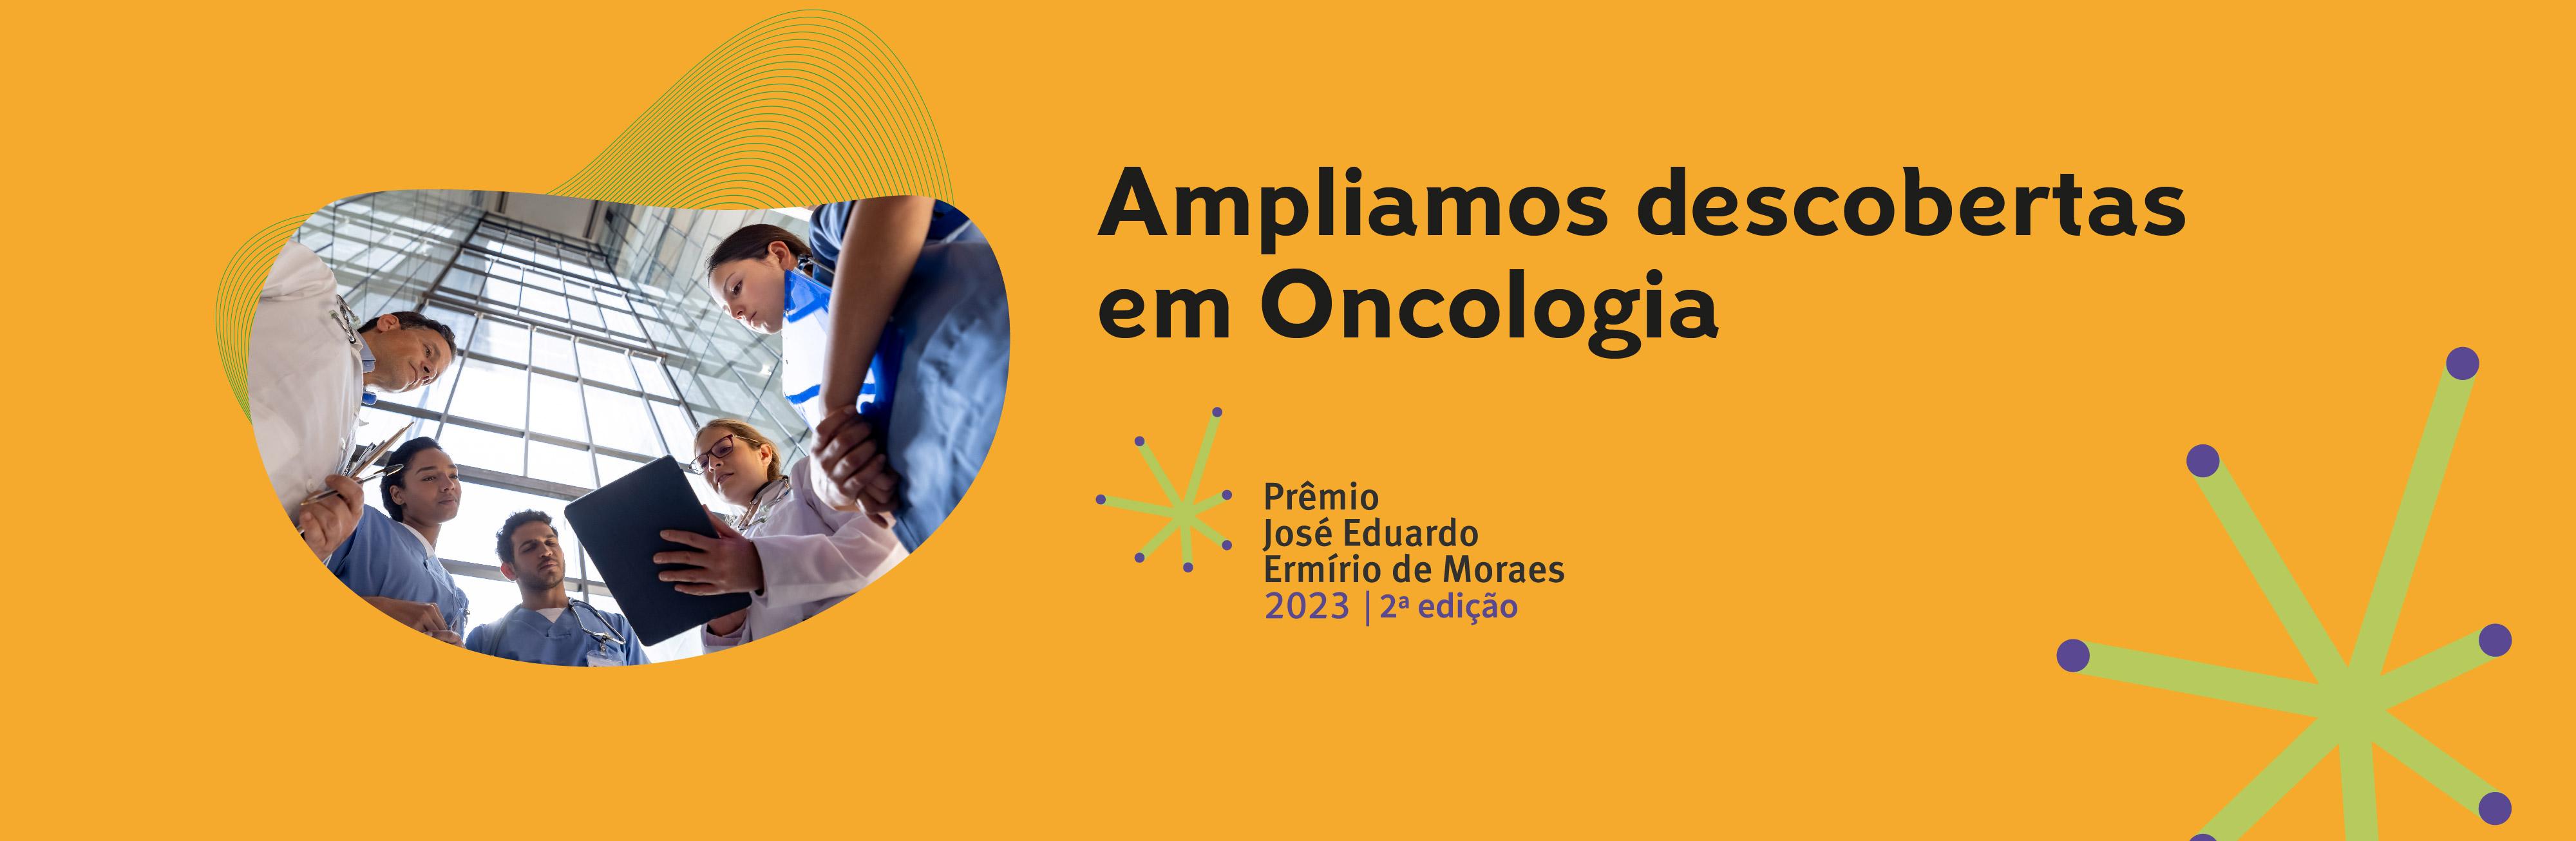 Ampliamos descobertas em oncologia. Prêmio José Eduardo Ermírio de Moraes: Inovações pela Vida